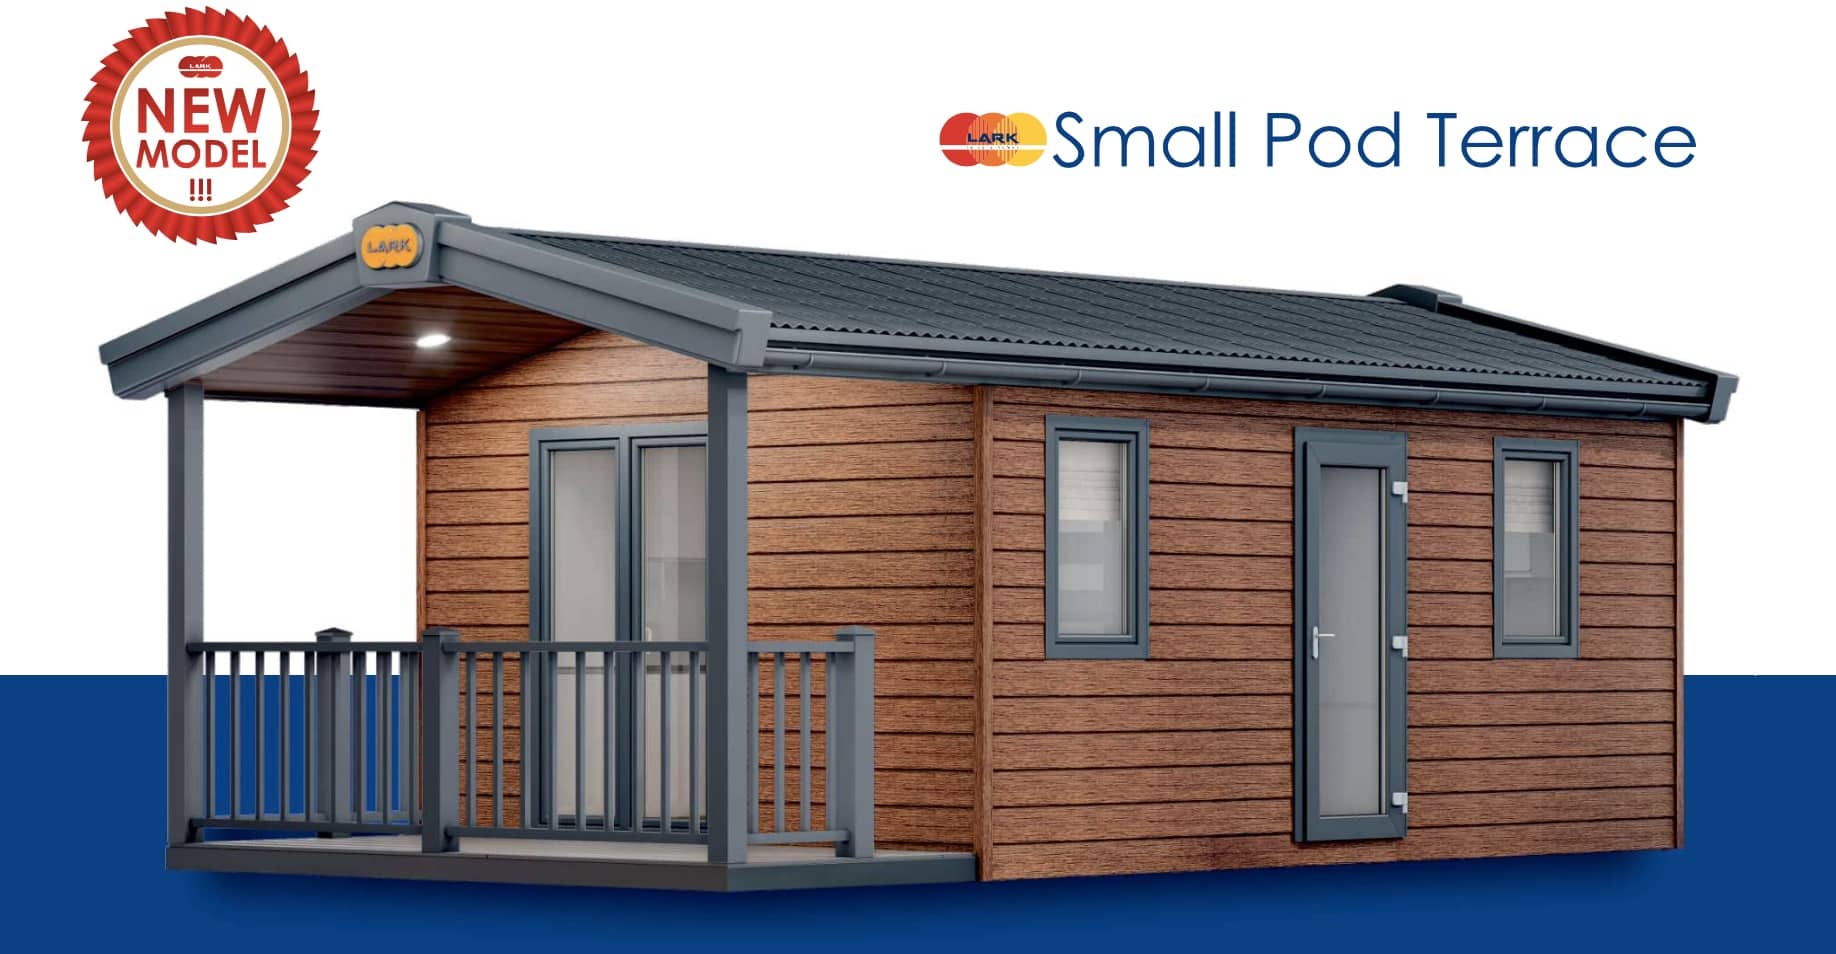 Small Pod Terrace